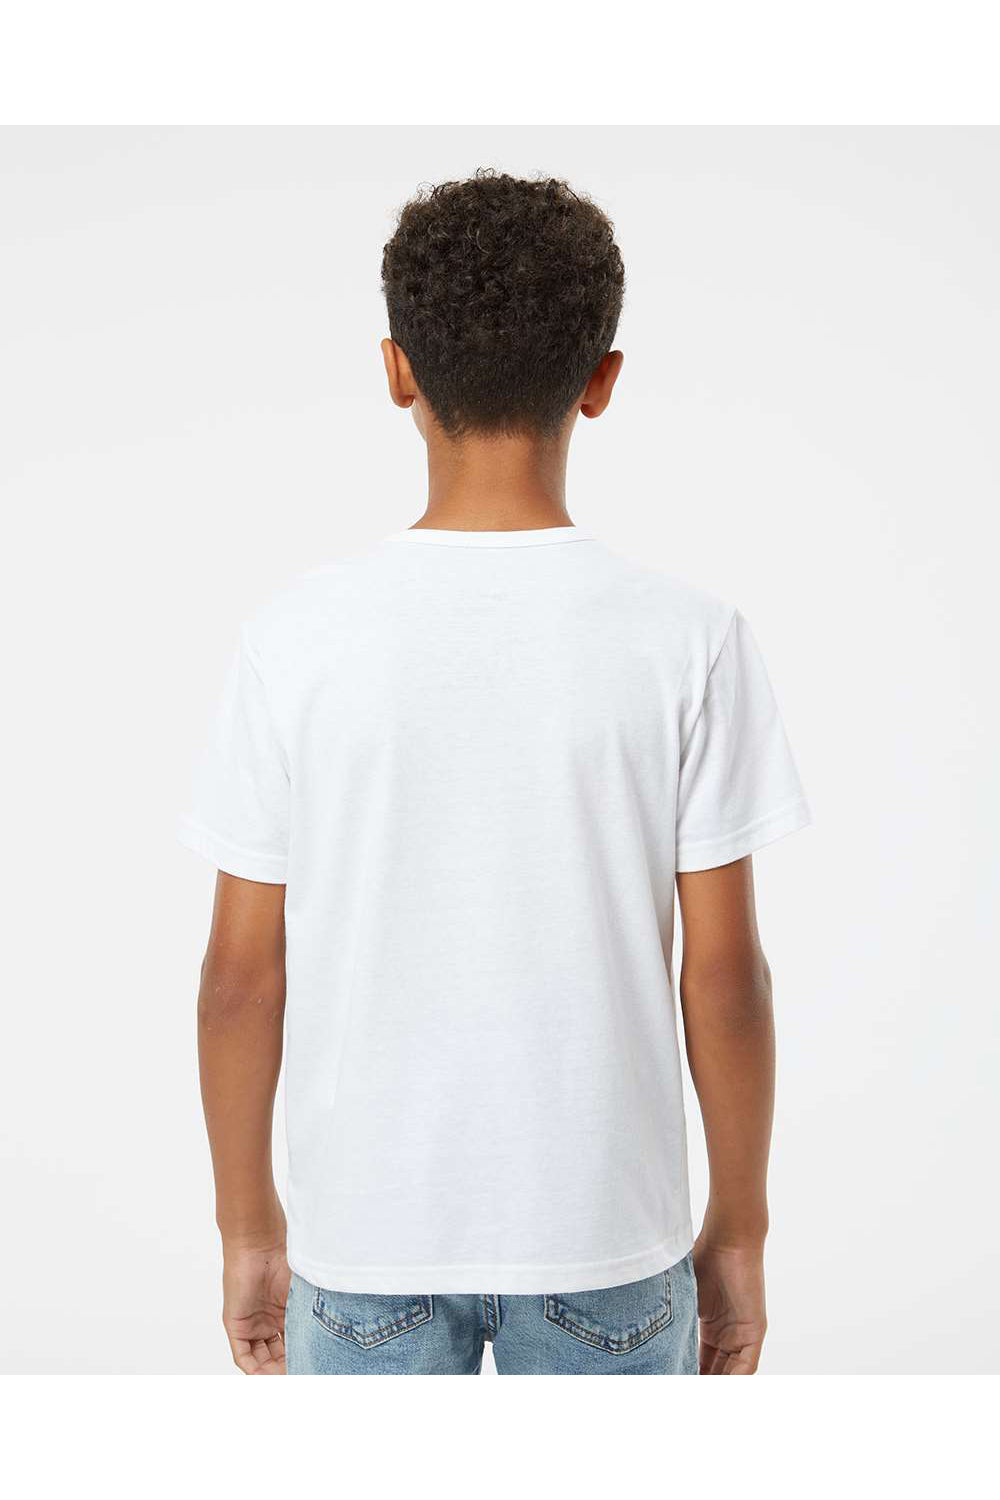 Kastlfel 2015 Youth RecycledSoft Short Sleeve Crewneck T-Shirt White Model Back